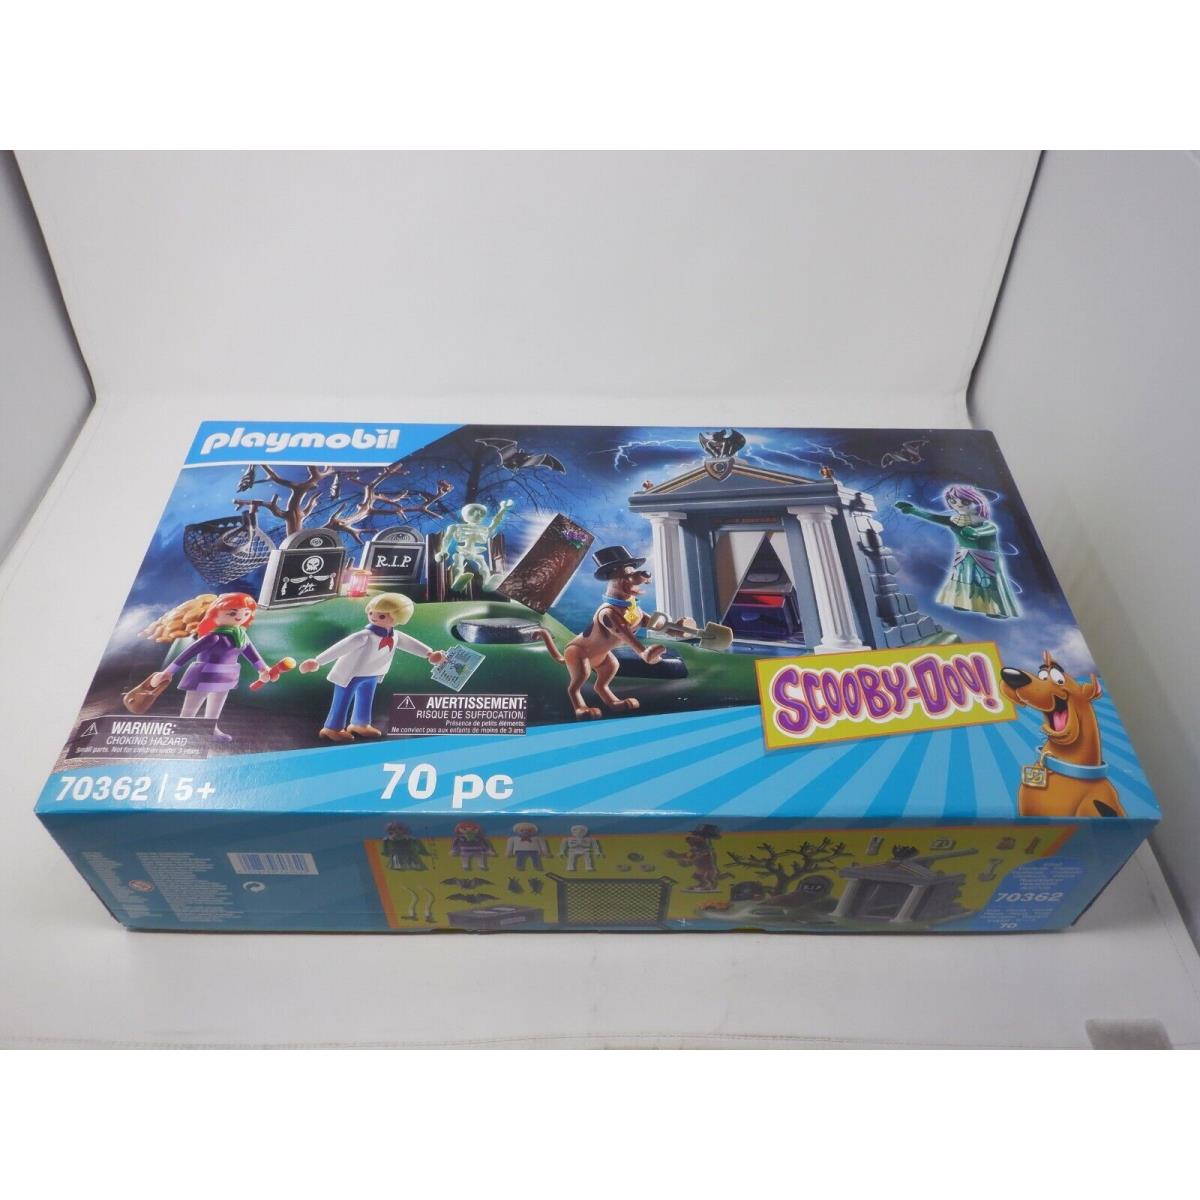 Playmobil Scooby-doo Cemetery Playset 70362 EZ1056